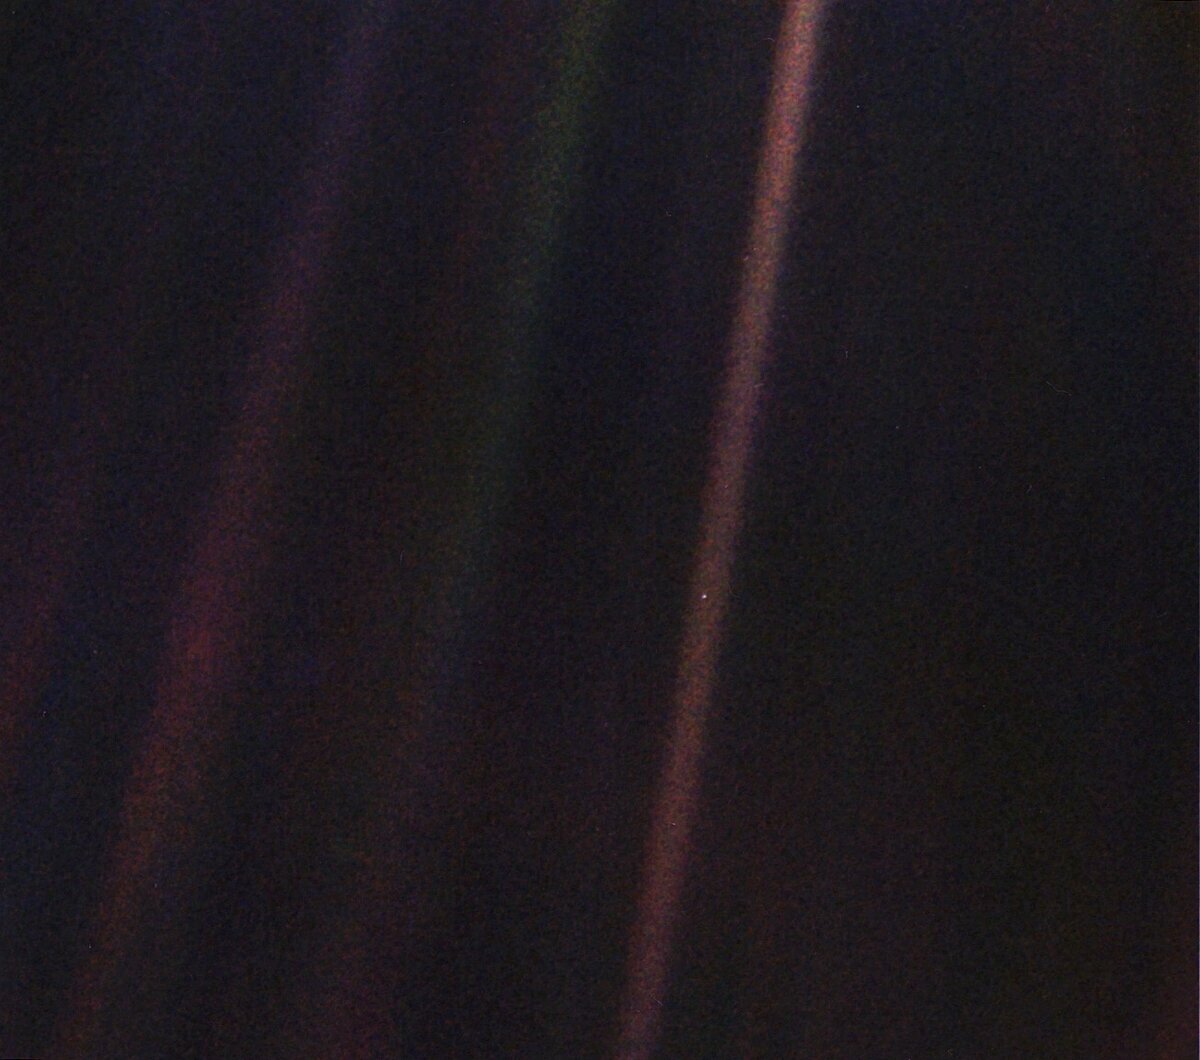 Бледная голубая точка. NASA/Voyager-1